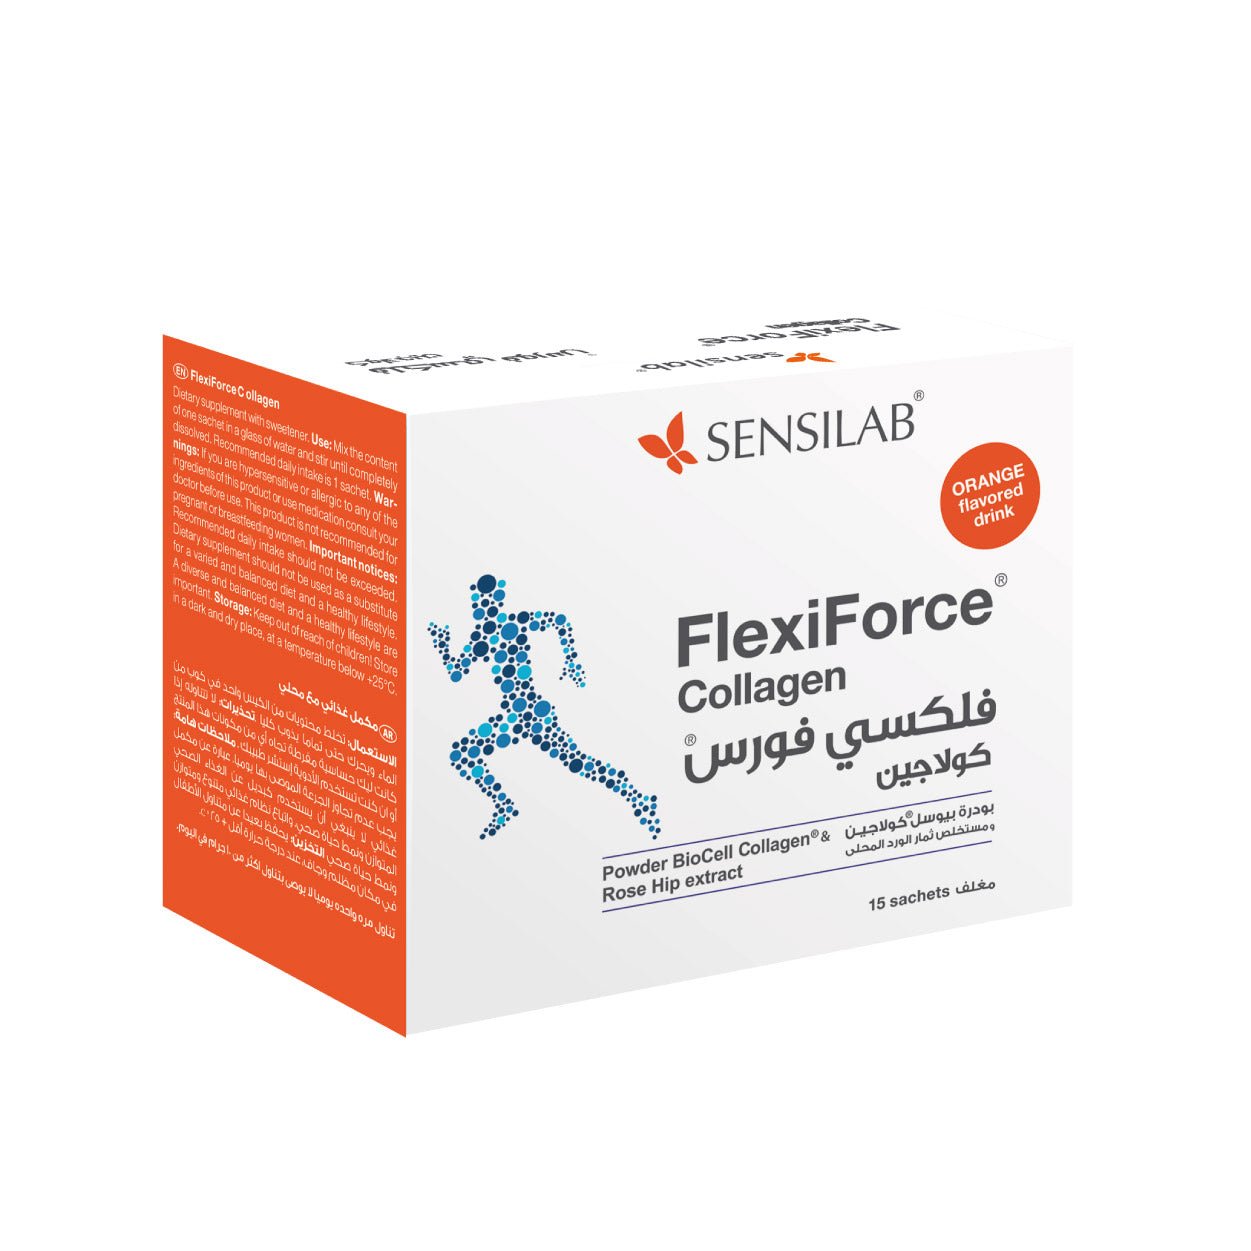 FlexiForce Collagen